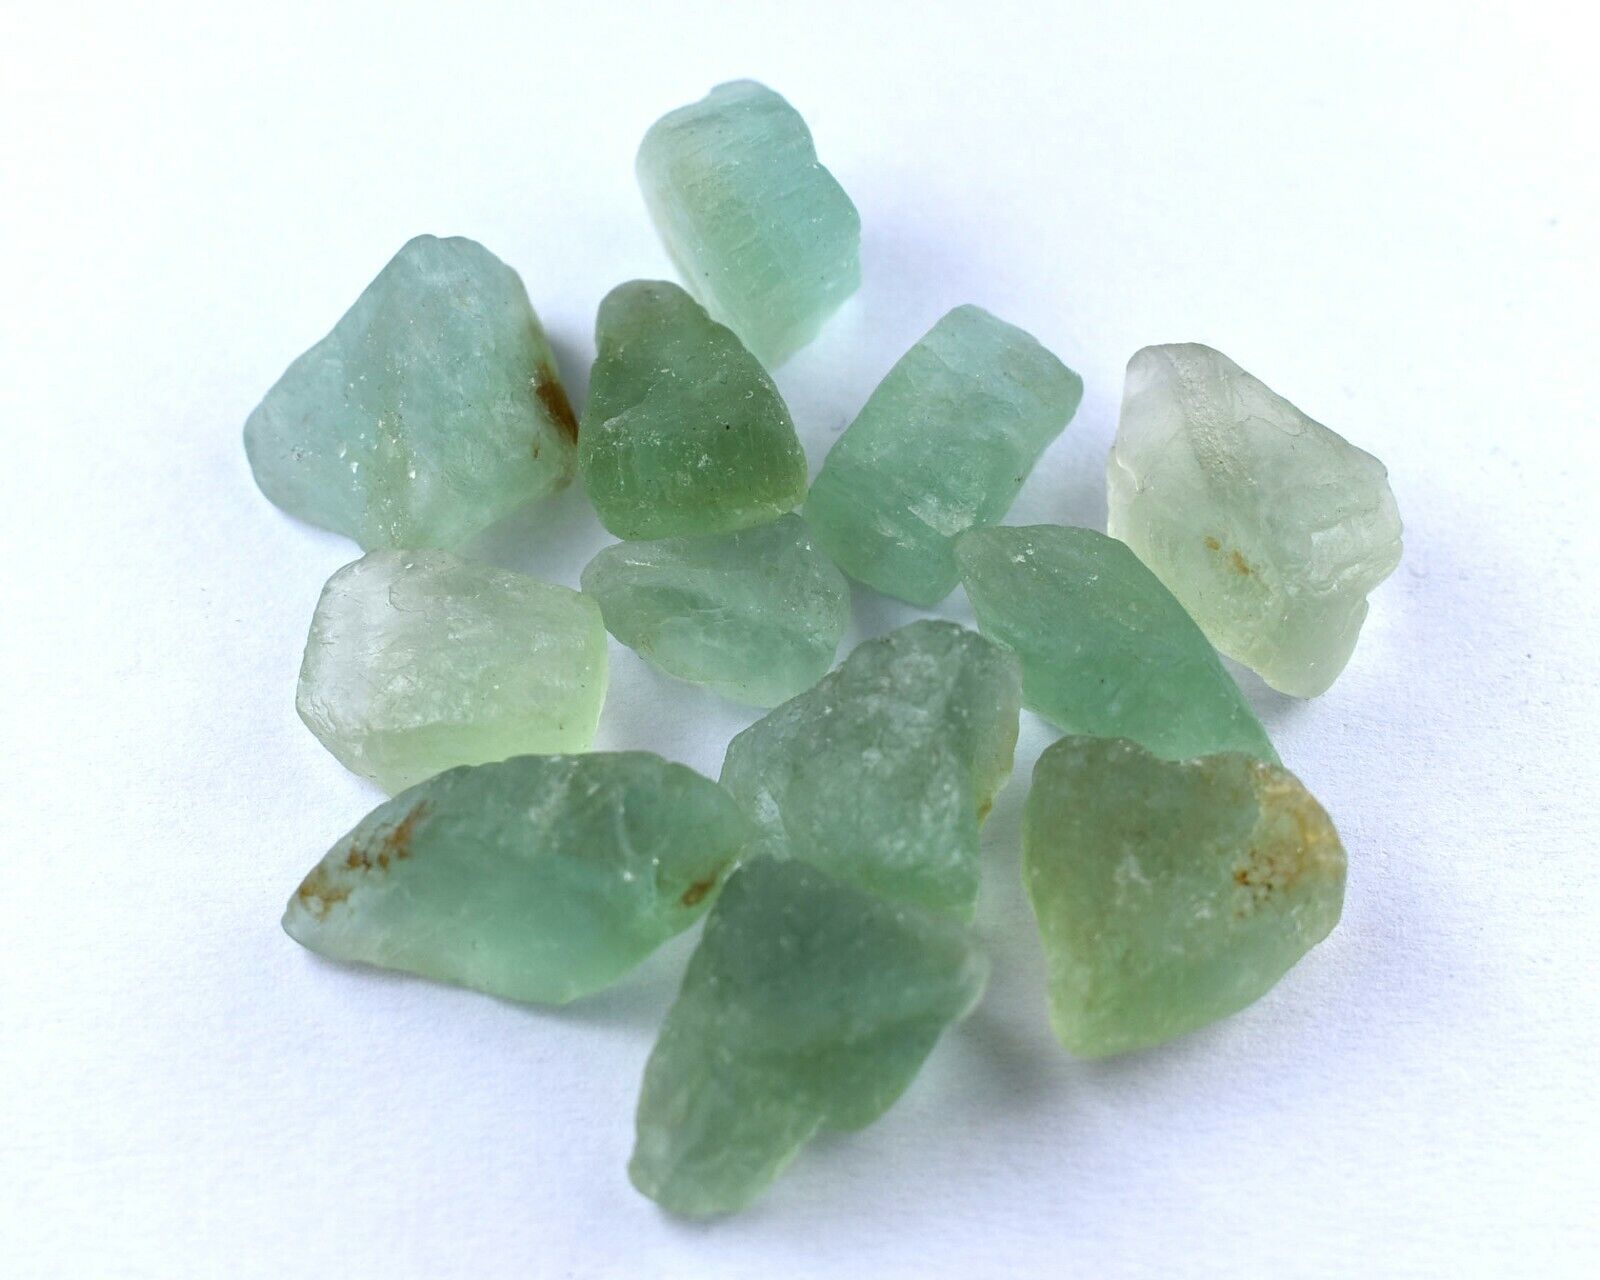 331 Carat Natural Green Fluorite Rough Loose Gemstone Crystal Rock lot Healing